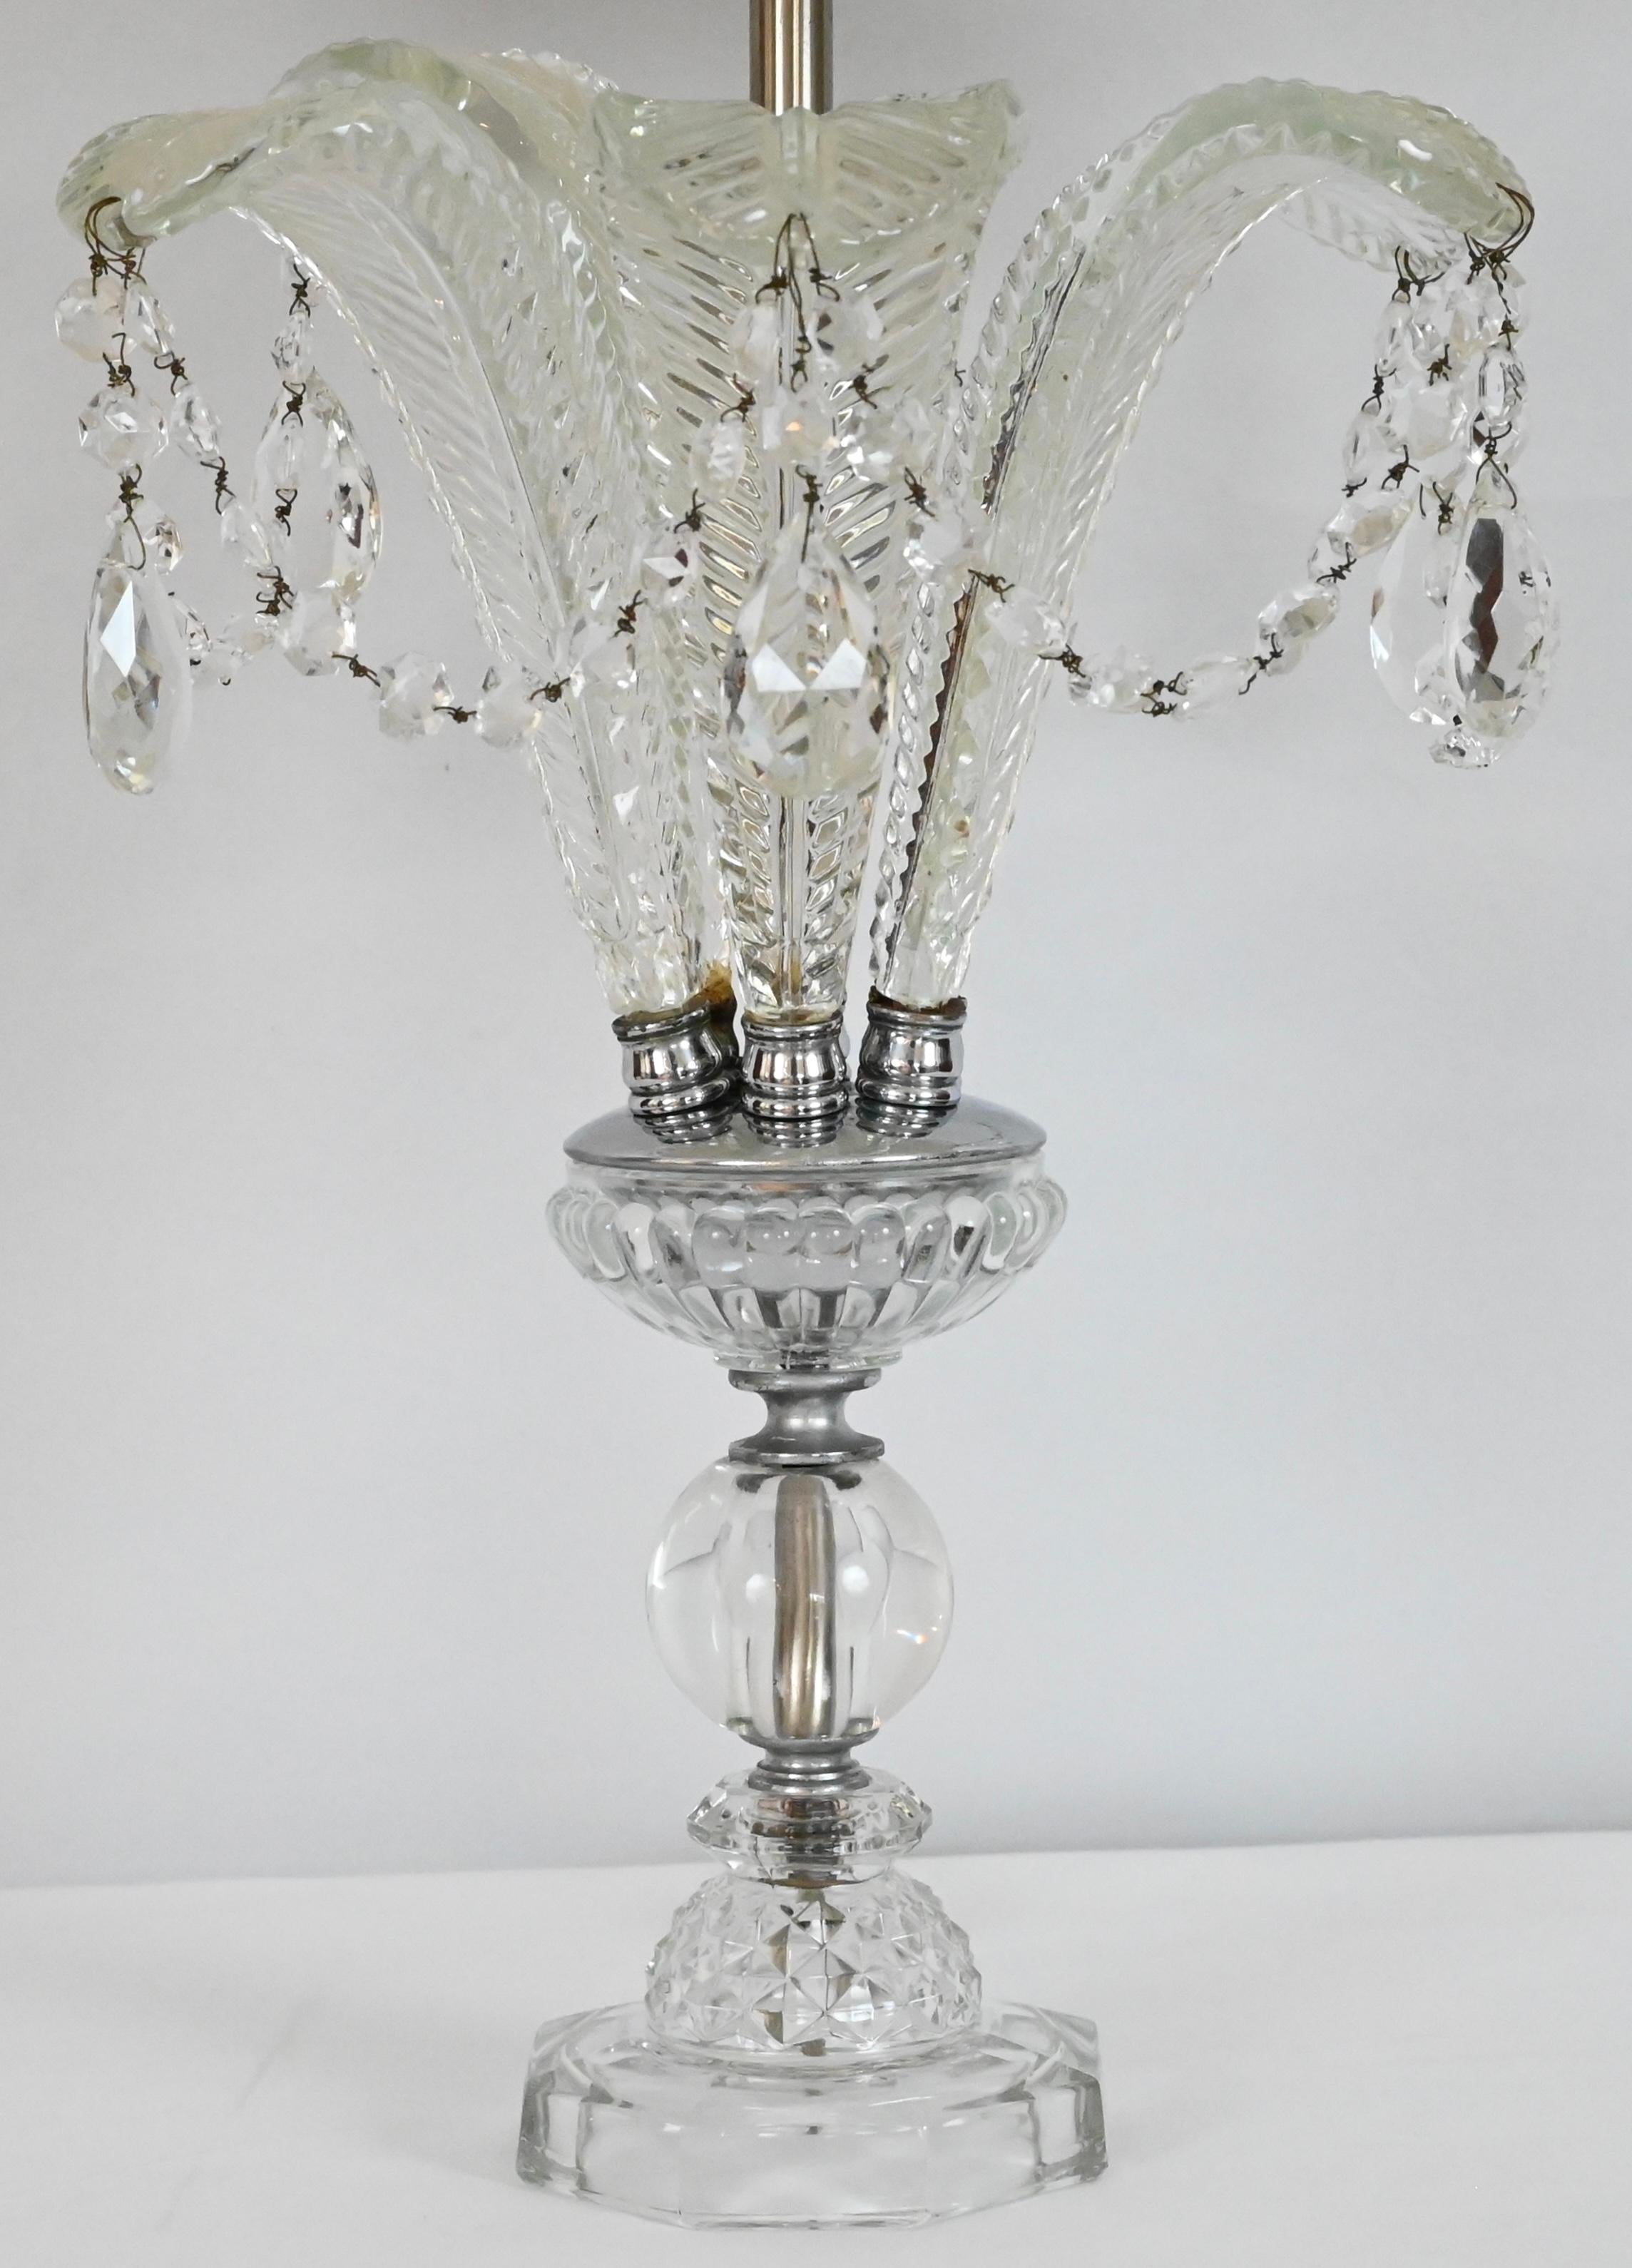 Magnifique paire de lampes à feuilles de fougère en cristal taillé de style Hollywood Regency, avec des bases en verre. Ces lampes ont été entièrement nettoyées et sont en parfait état de fonctionnement. Les feuilles de fougère en verre sont